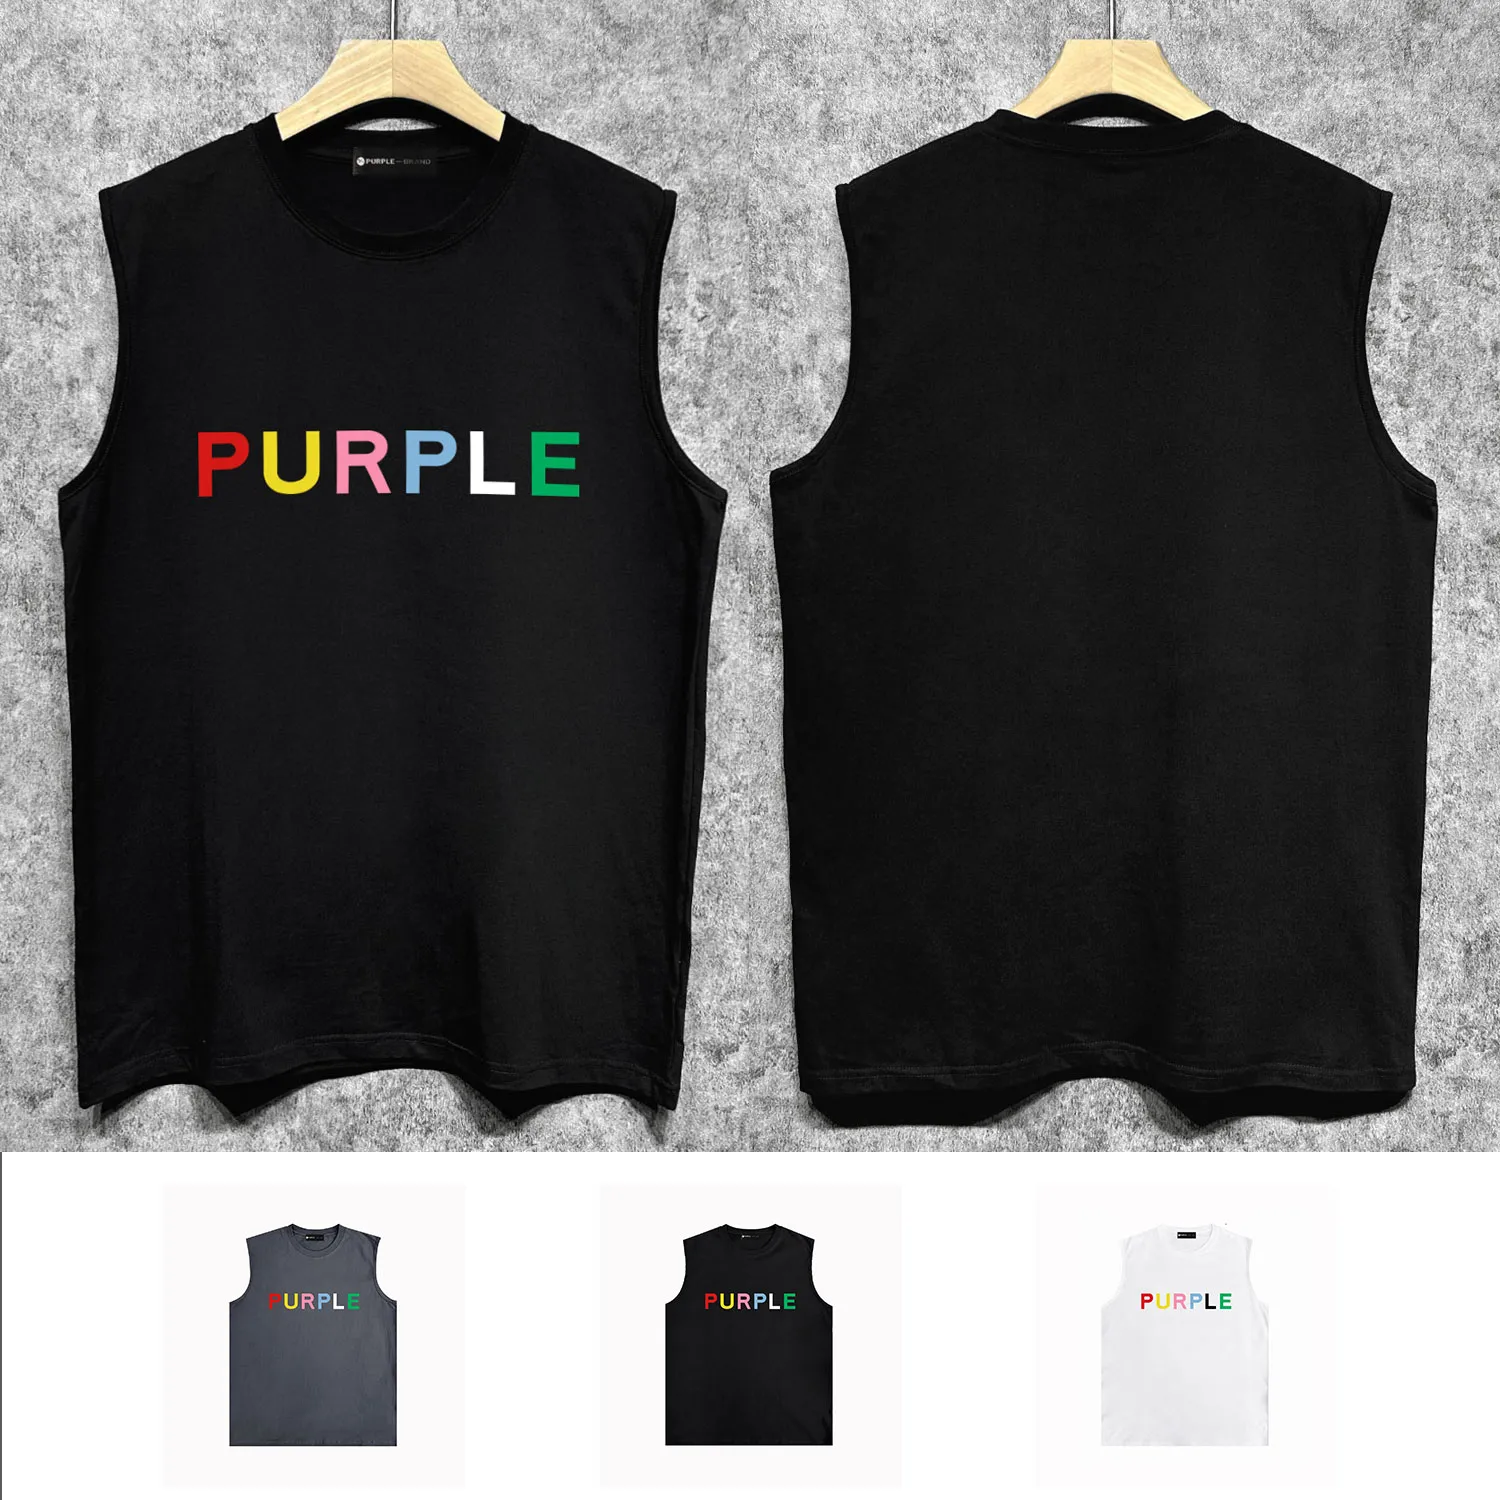 T-shirt sans manches à la marque Purple Brand de loisirs confortable pour hommes et femmes